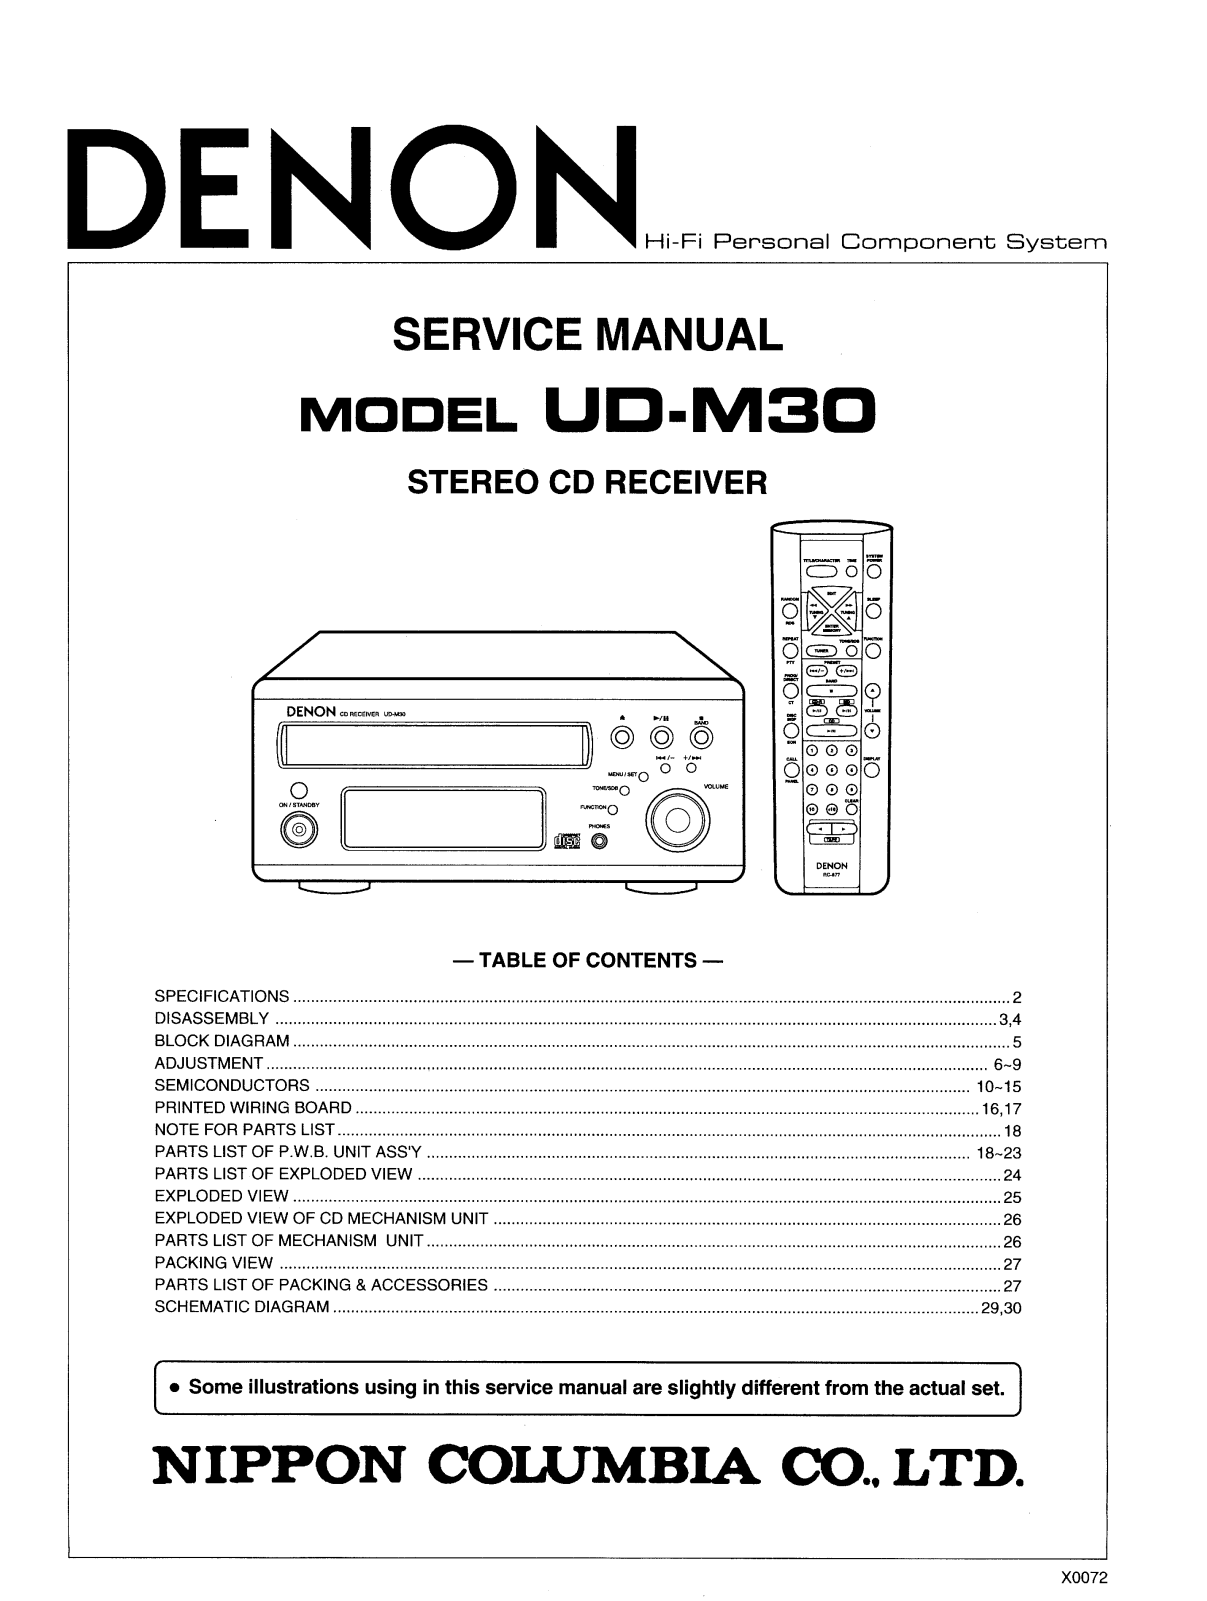 Denon UD-M30 Service Manual